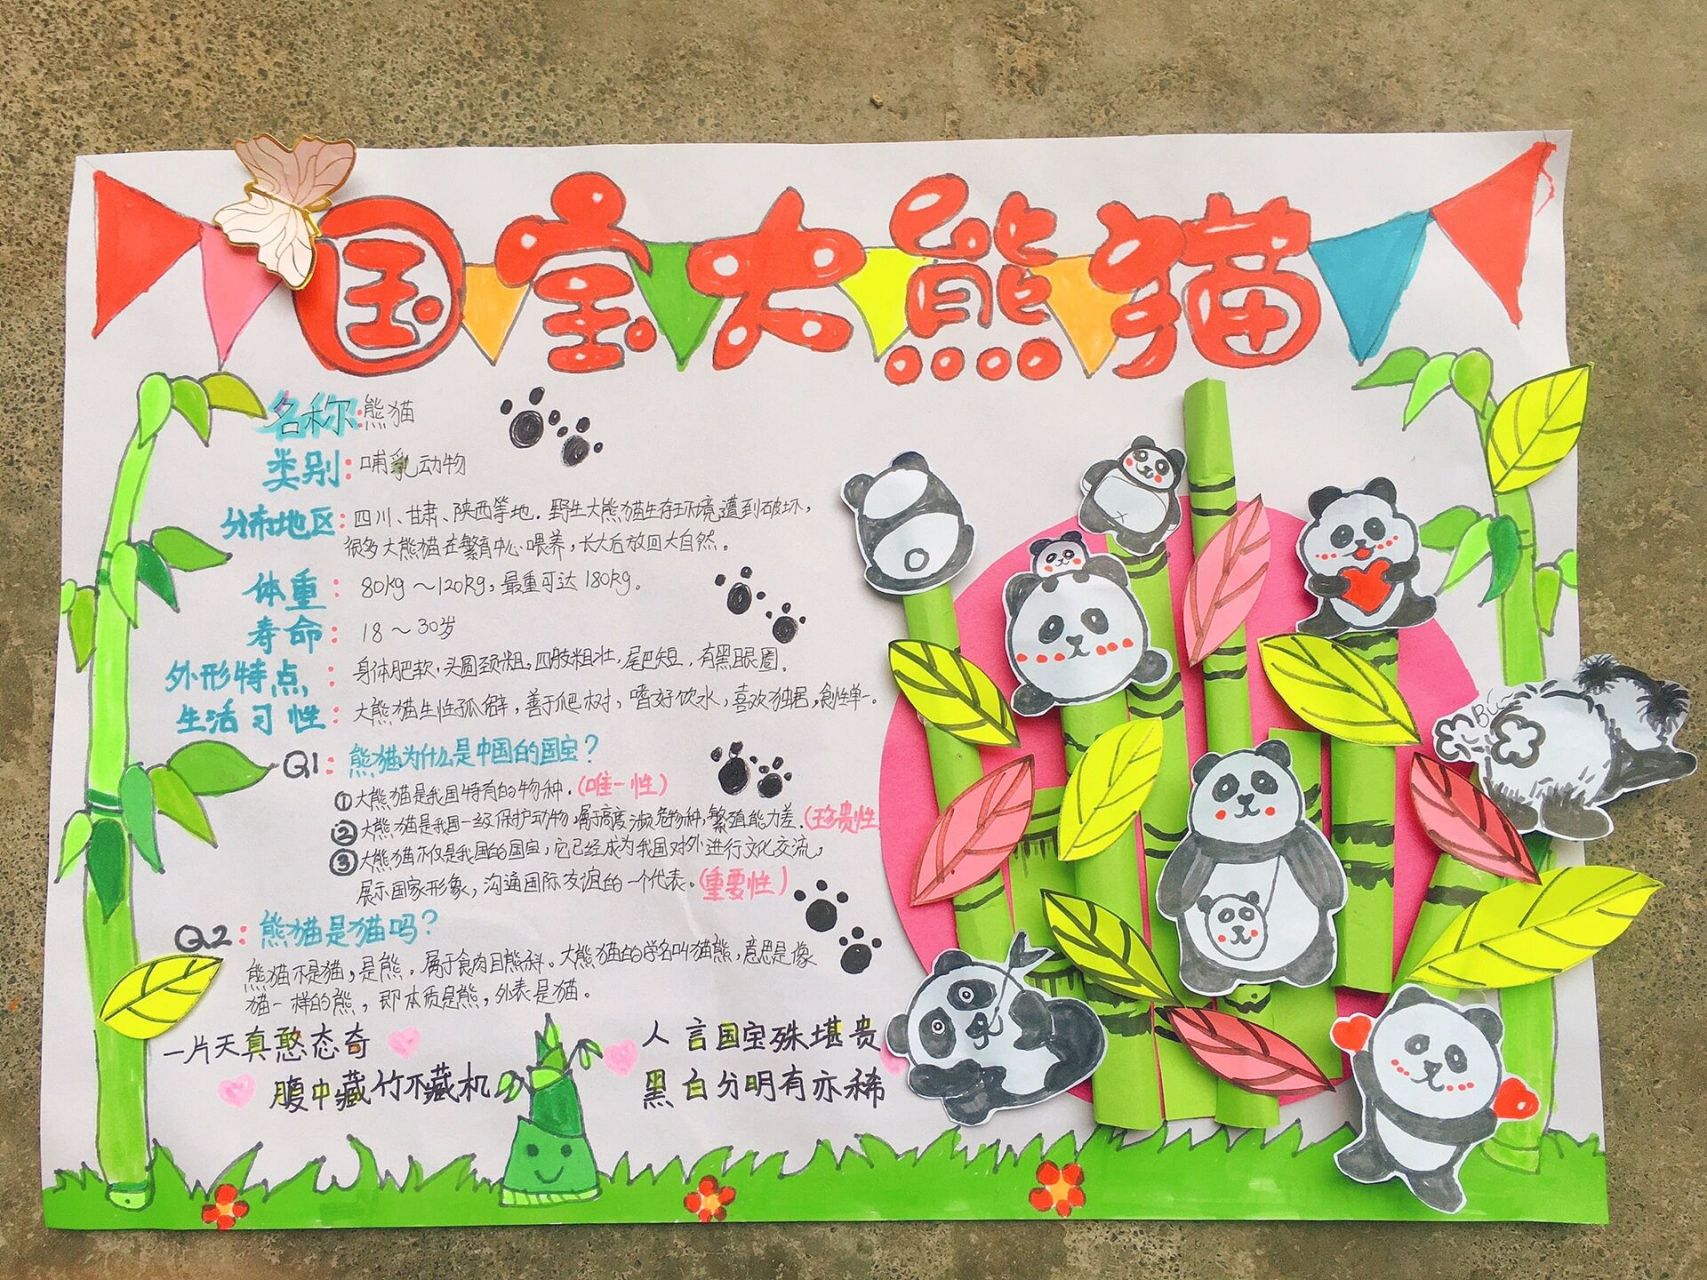 国宝大熊猫的资料介绍图片